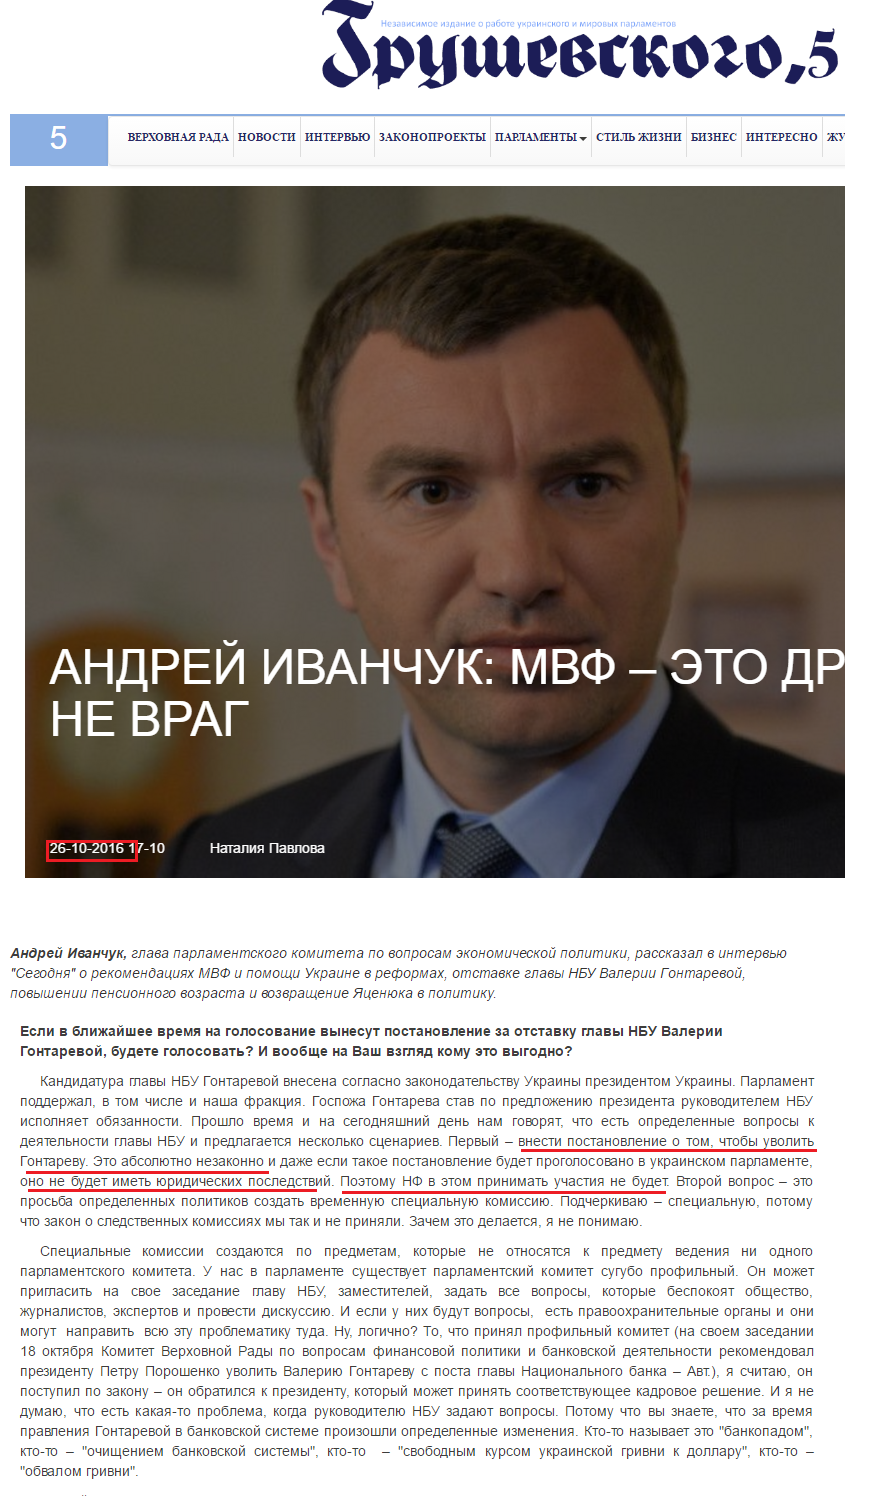 http://grushevskogo5.com/interview/andrey-ivanchuk-mvf-eto-drug-a-ne-vrag/